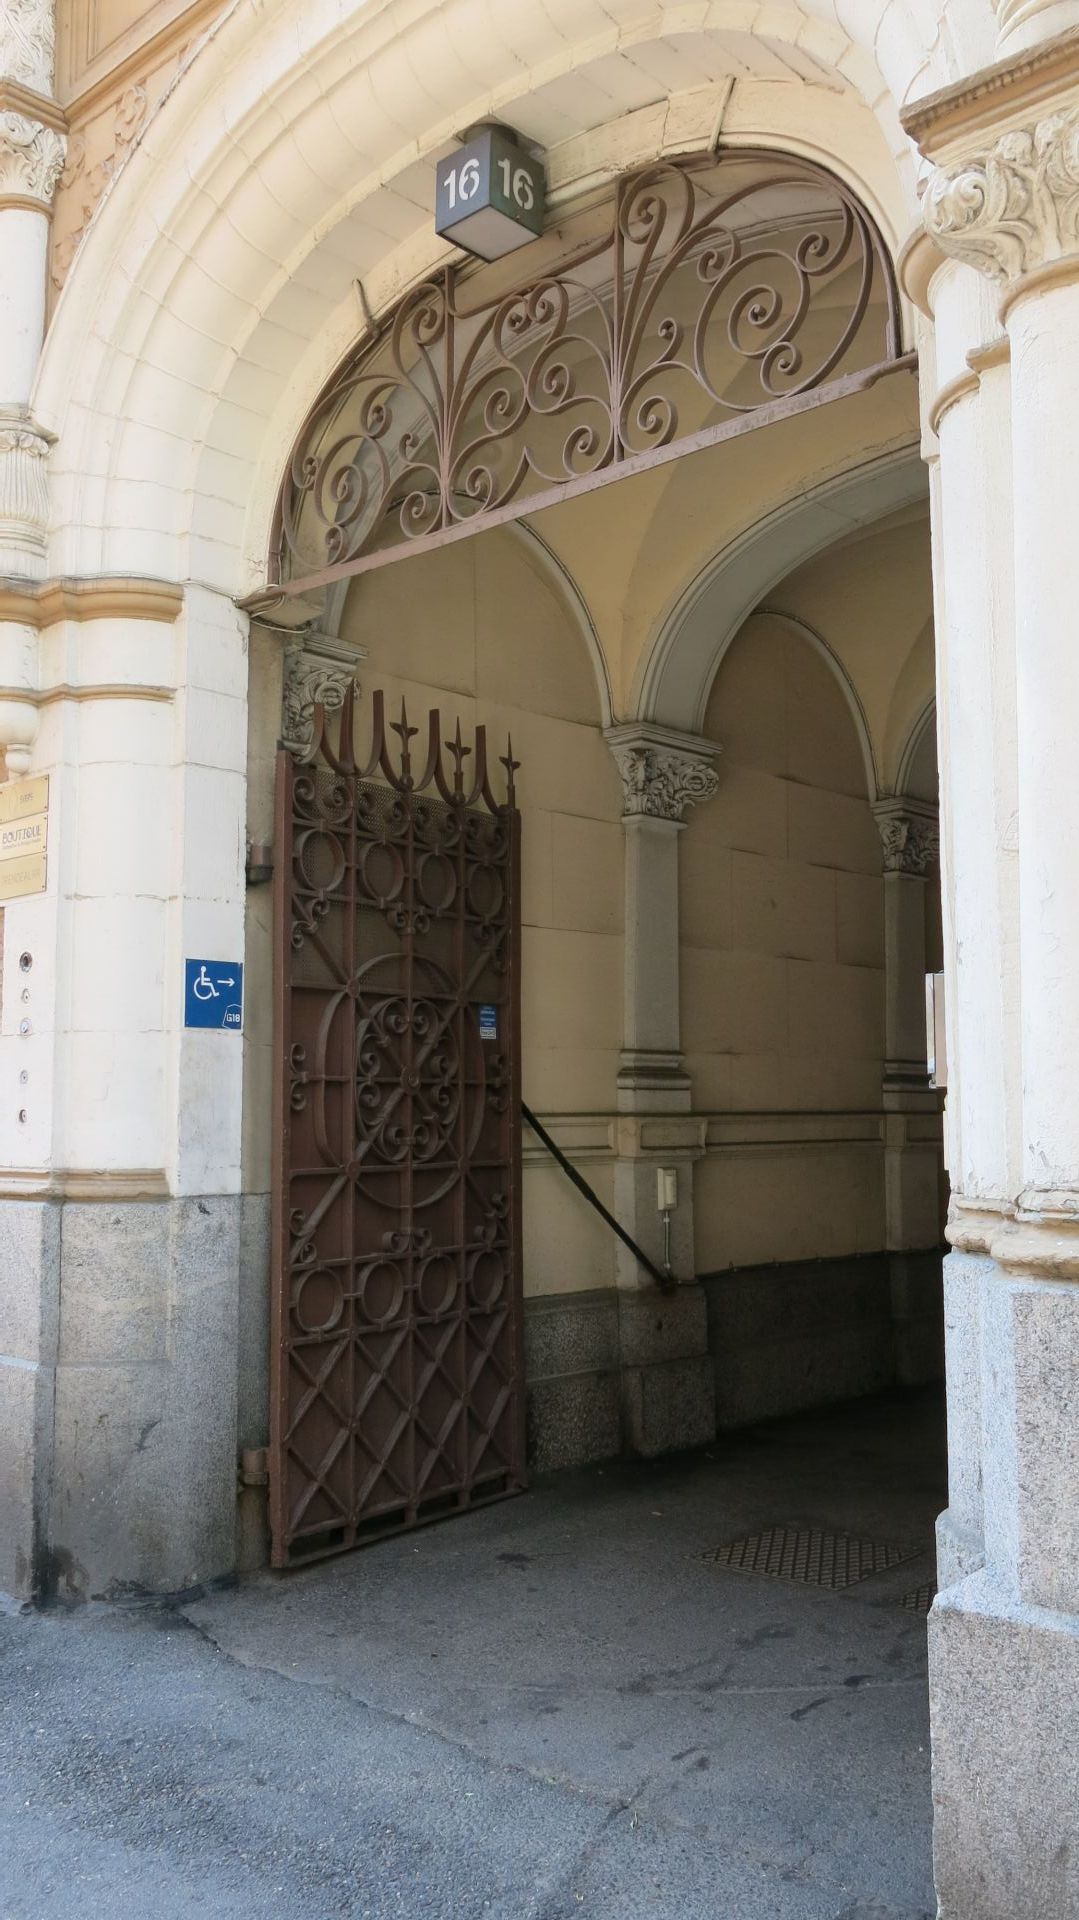 Porten som erbjuder tillgänglig rutt till byggnaden finns på adressen Georgsgatan 16.